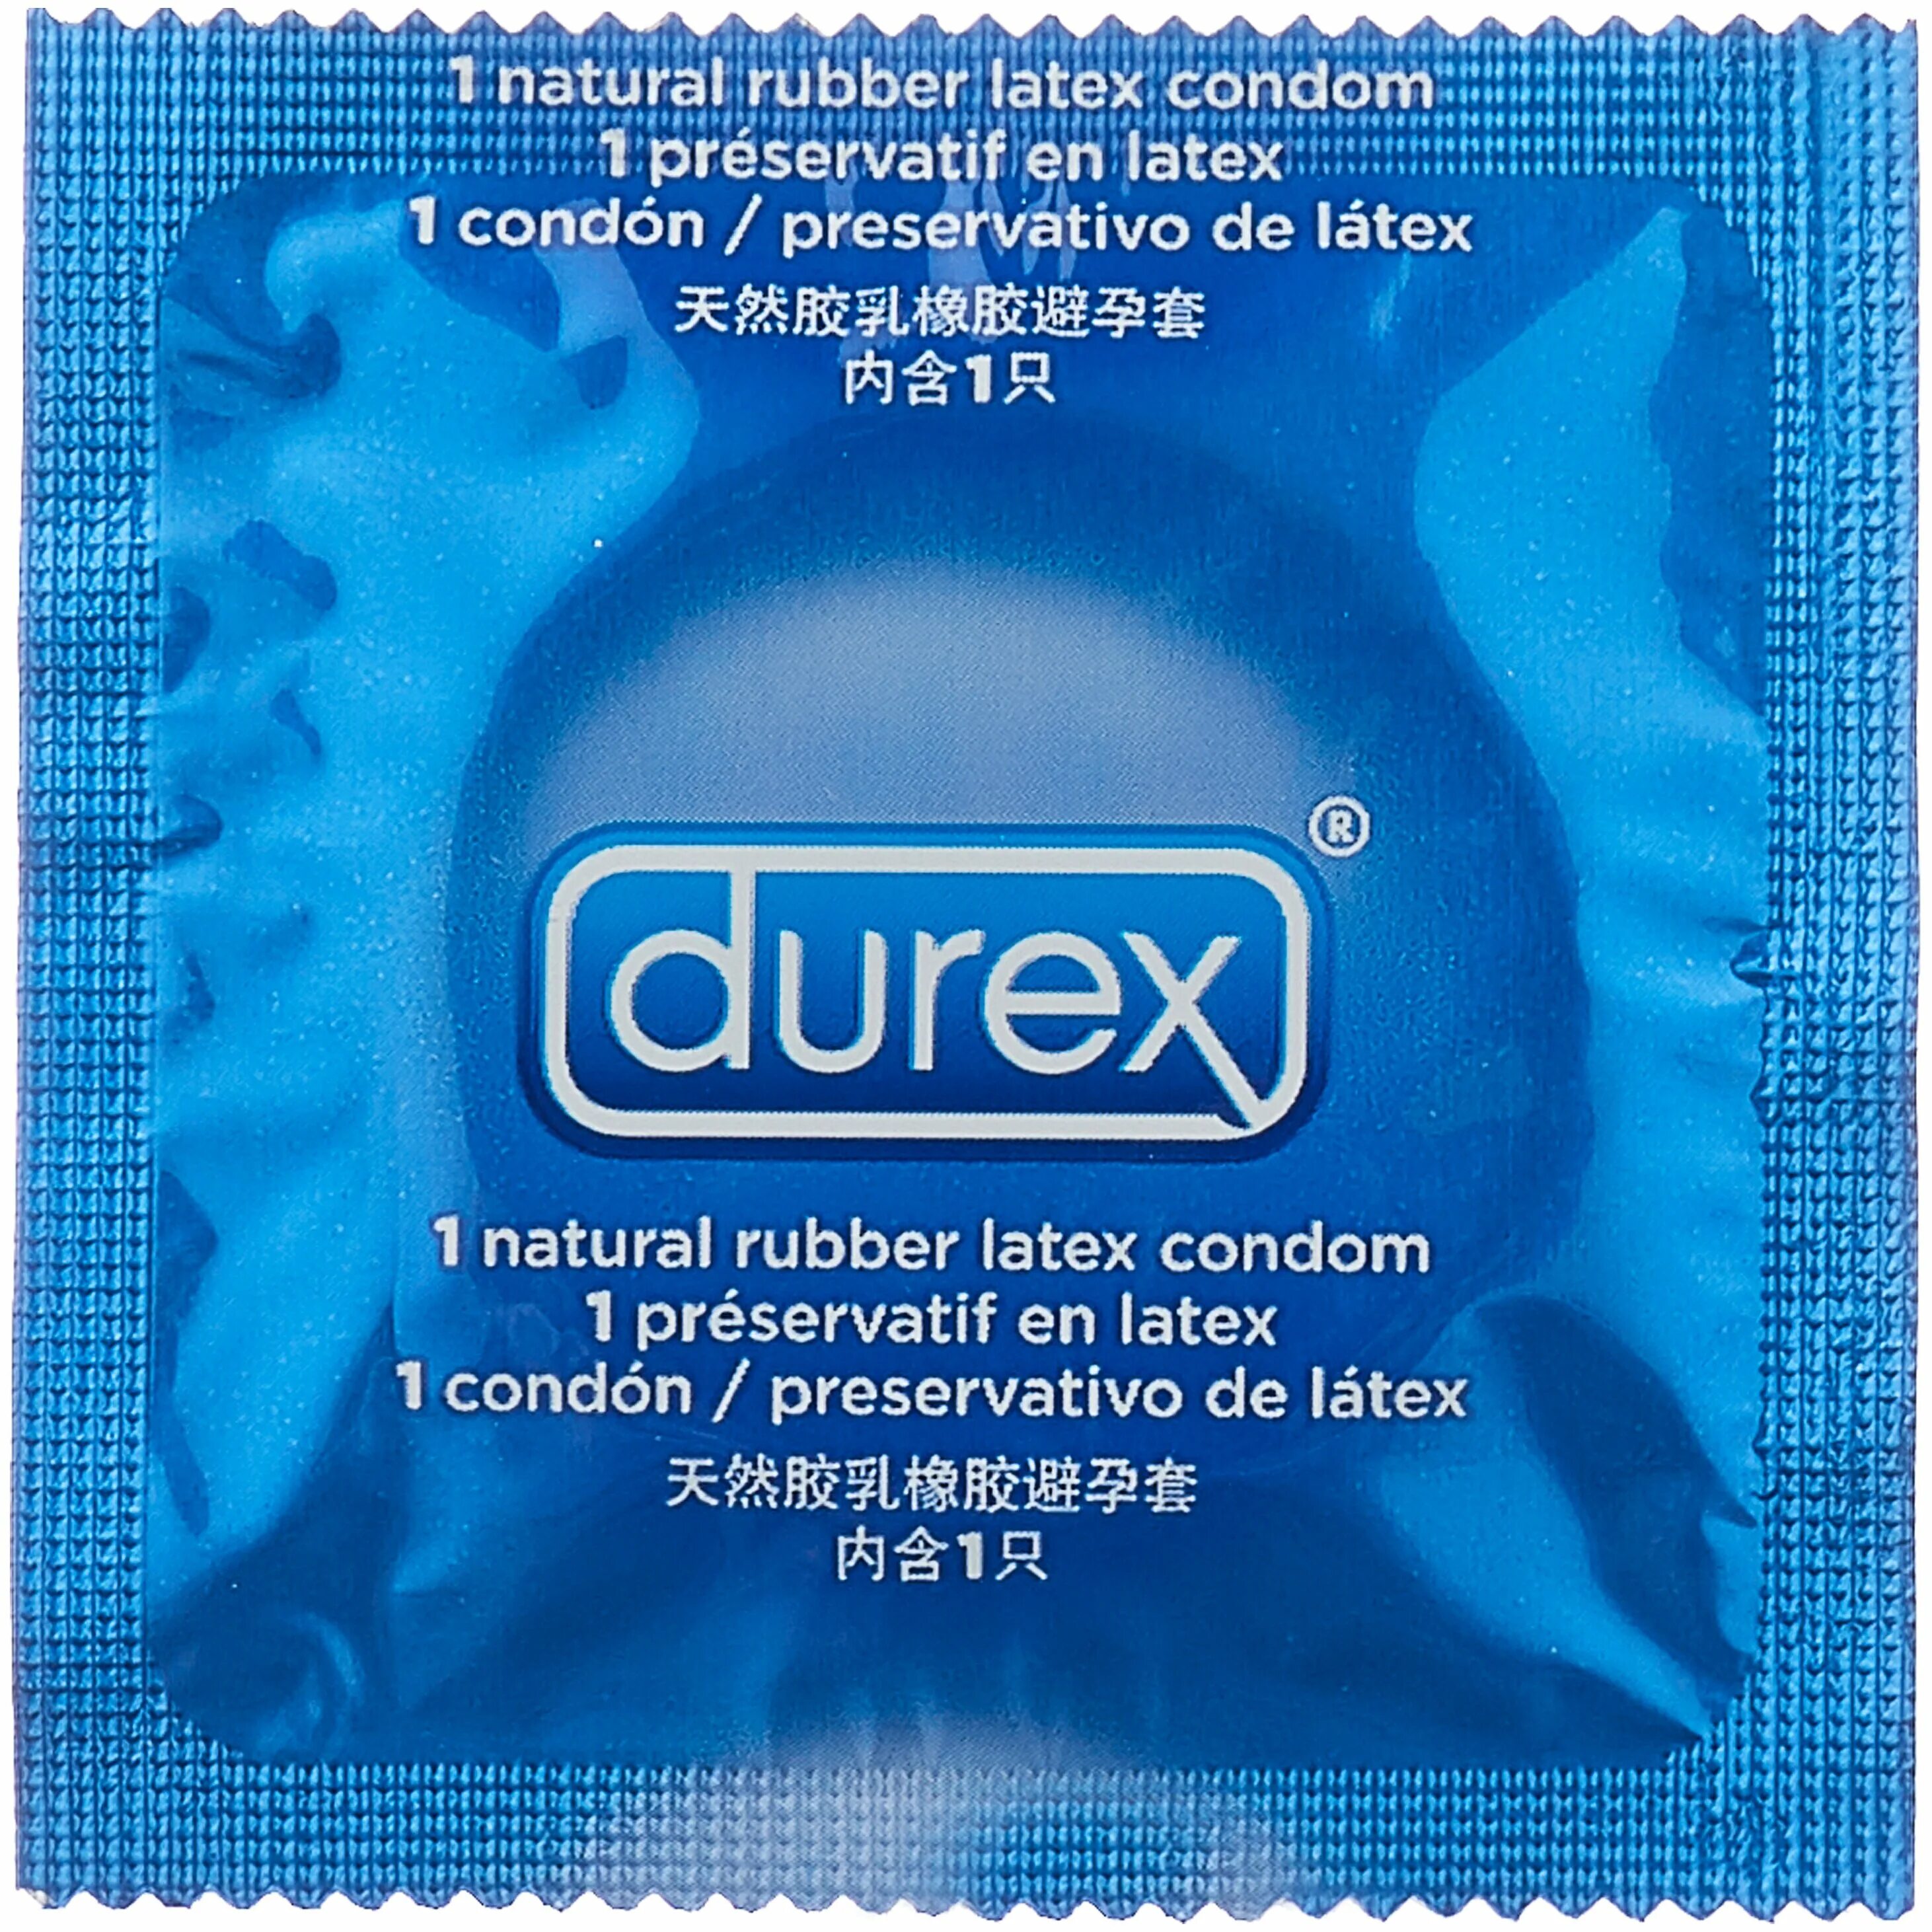 Презервативы Durex Extra safe №12. Durex презерватив Extra safe n12. Дюрекс презервативы Экстра сейф №3. Дюрекс презервативы Экстра сейф №12.